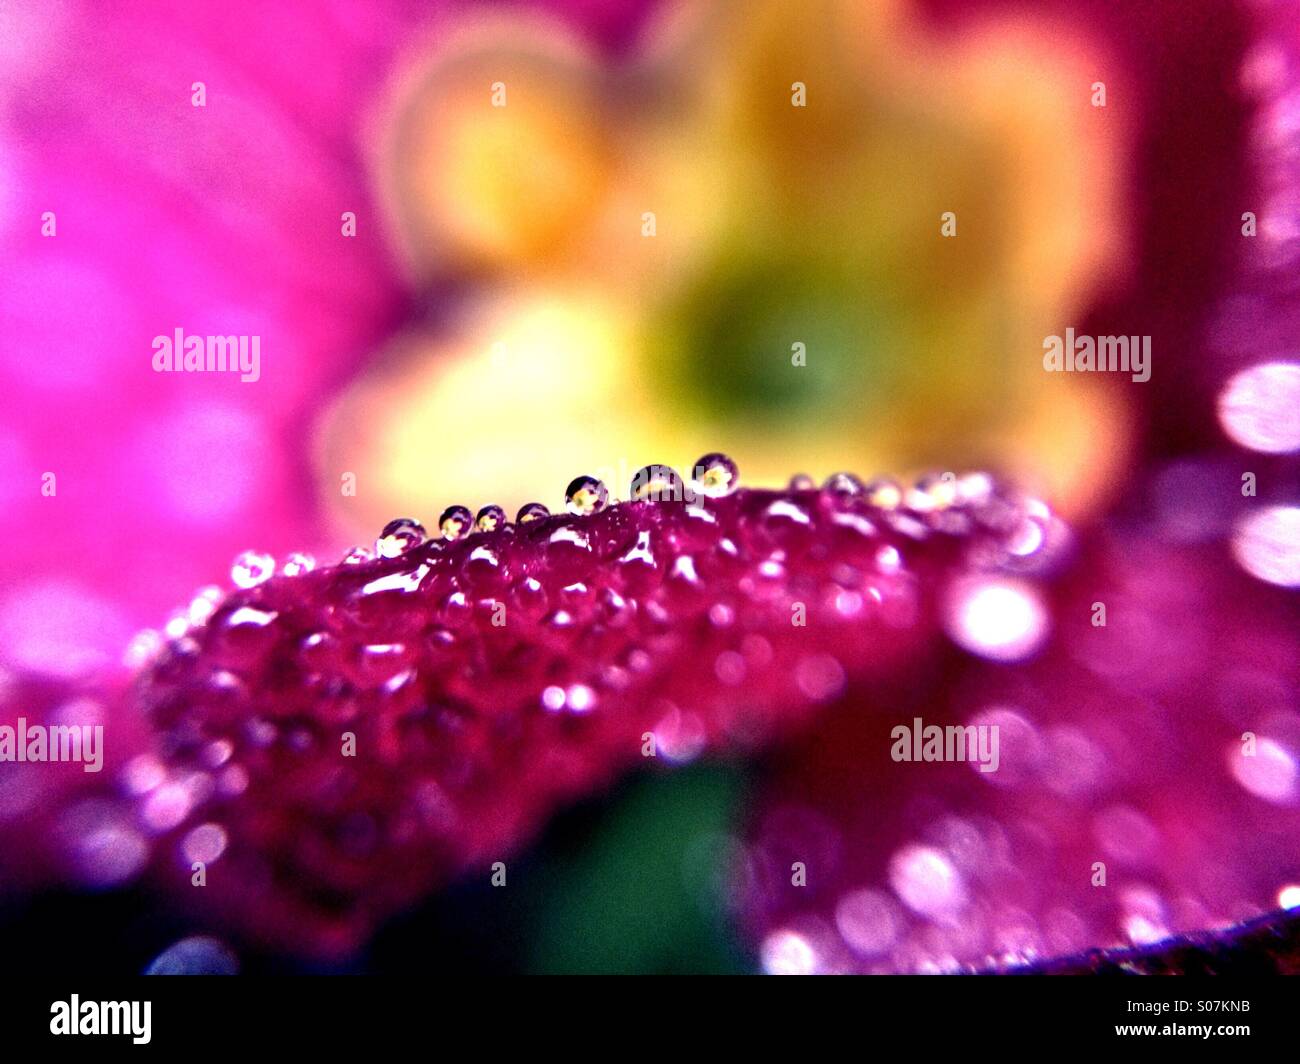 La rugiada sul lato di primrose petalo con la riflessione del fiore in ciascuna goccia Foto Stock